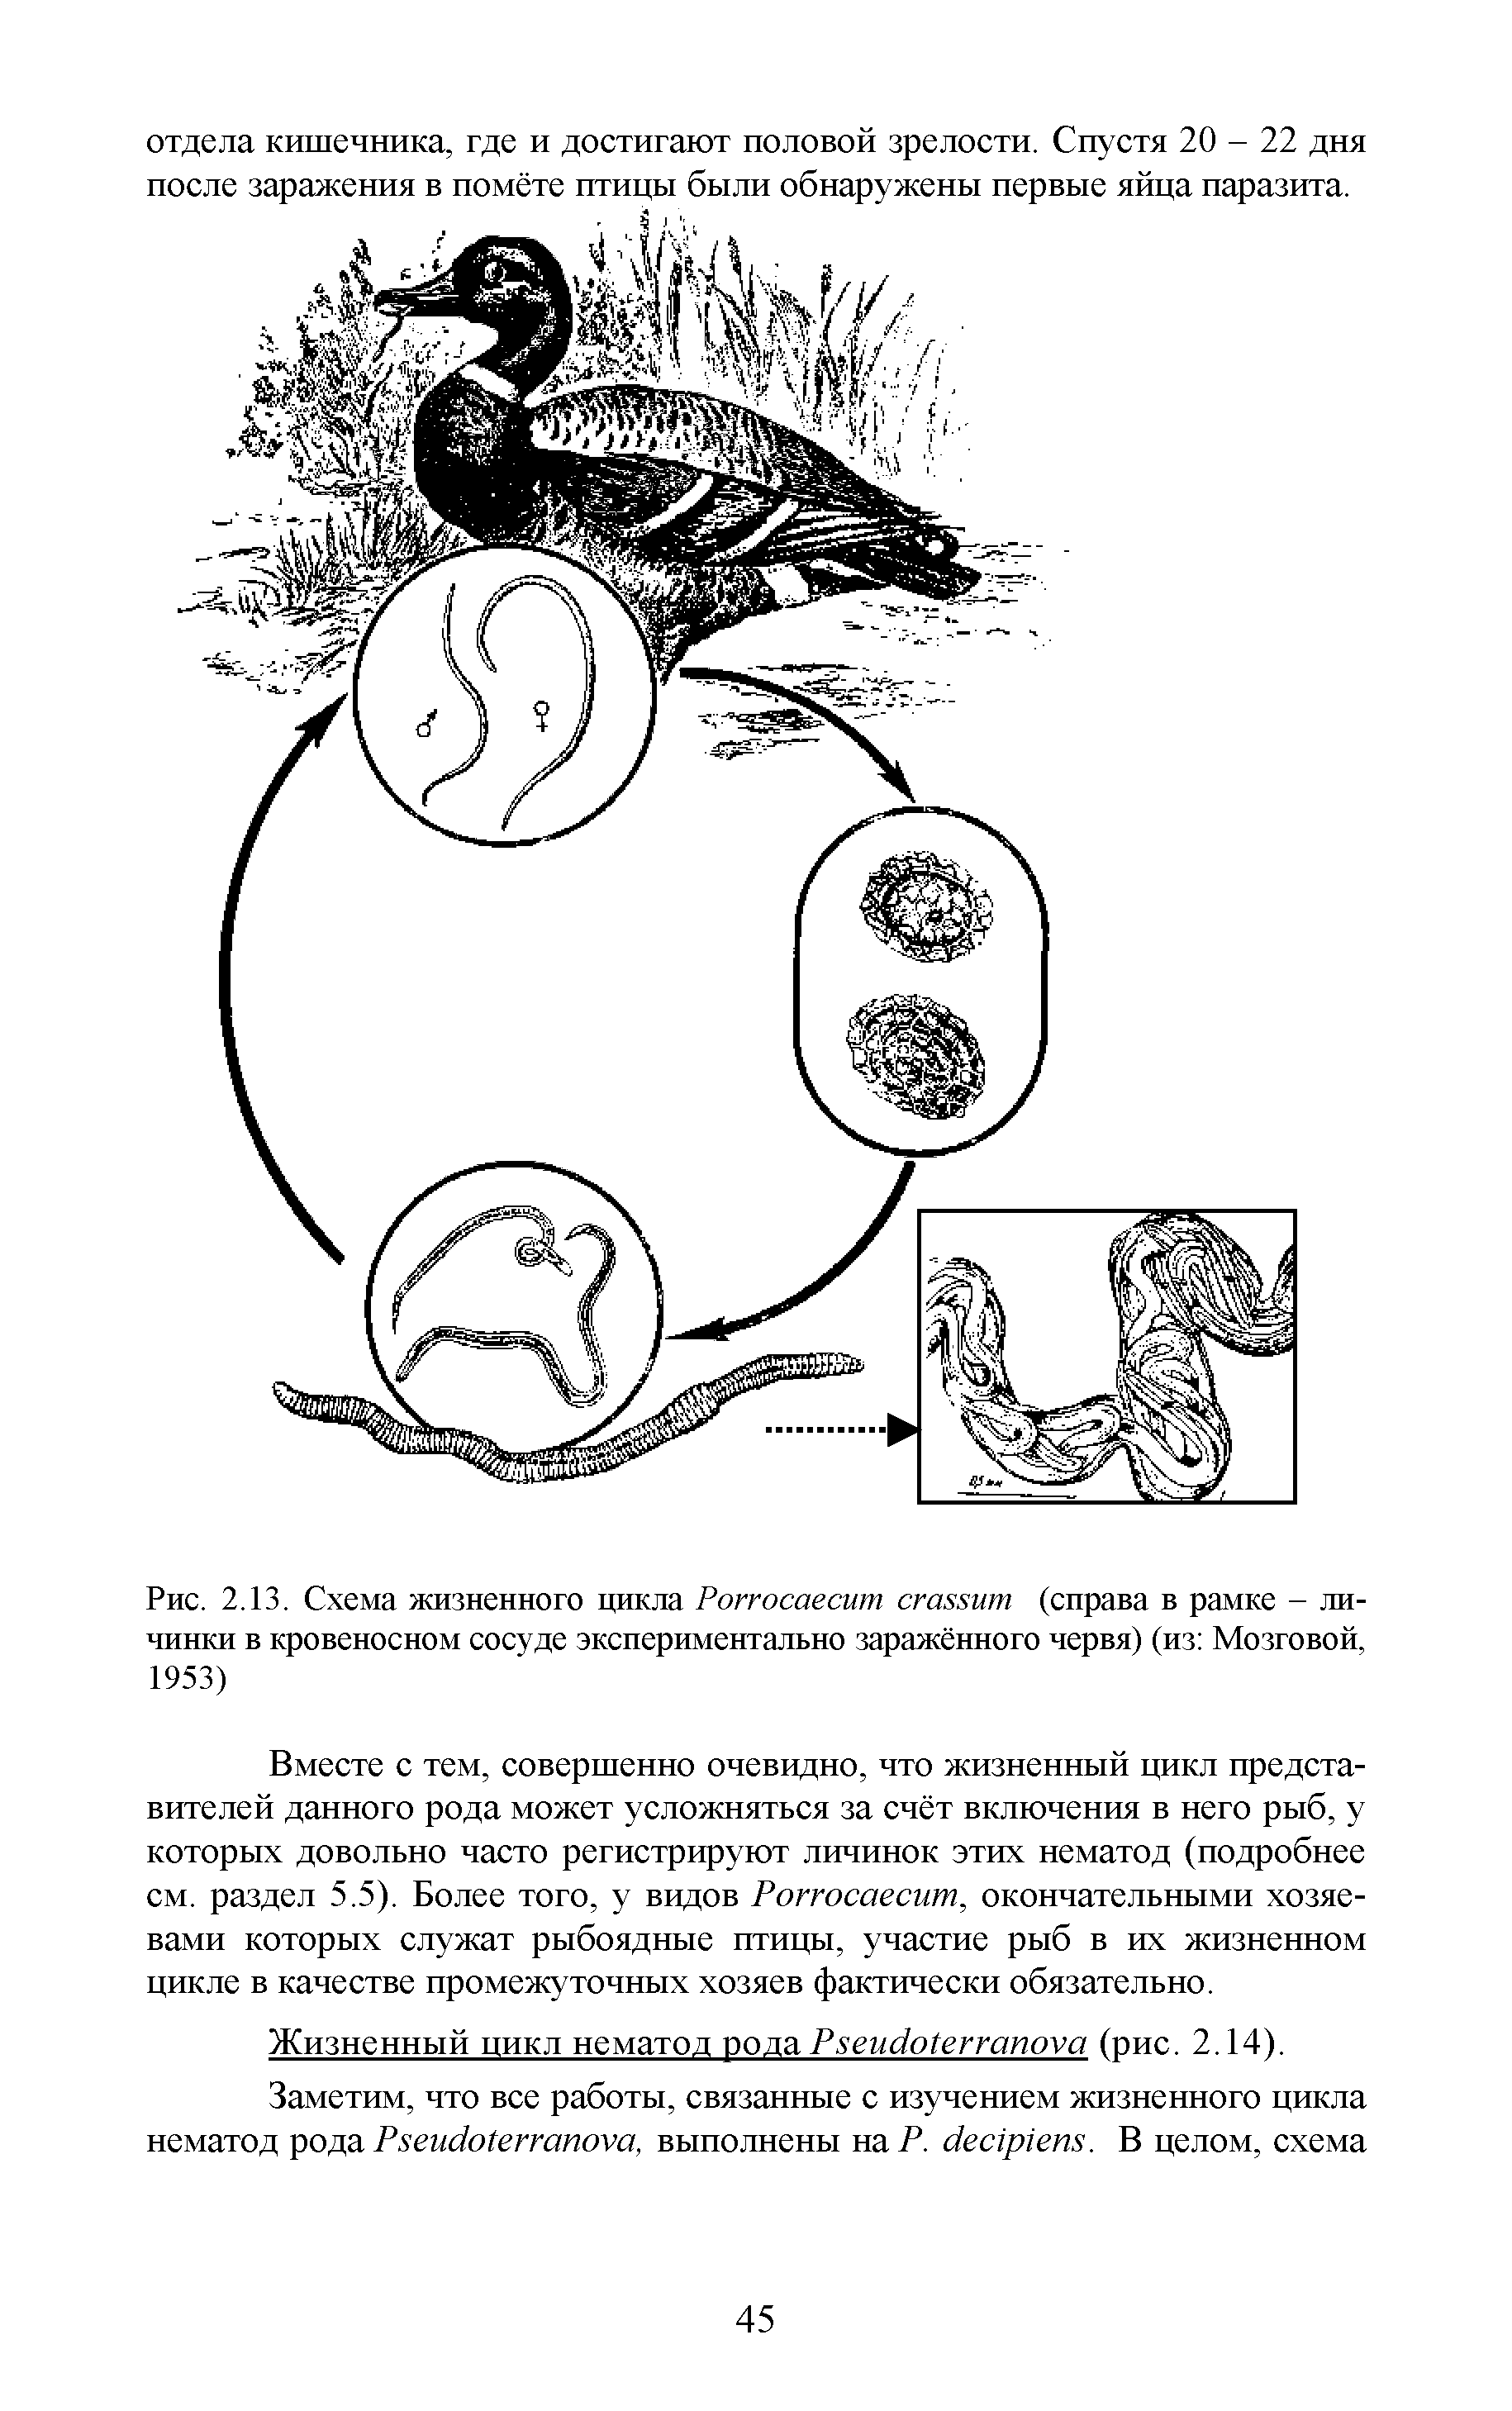 Рис. 2.13. Схема жизненного цикла Роггосаесит сгсшит (справа в рамке - личинки в кровеносном сосуде экспериментально заражённого червя) (из Мозговой, 1953)...